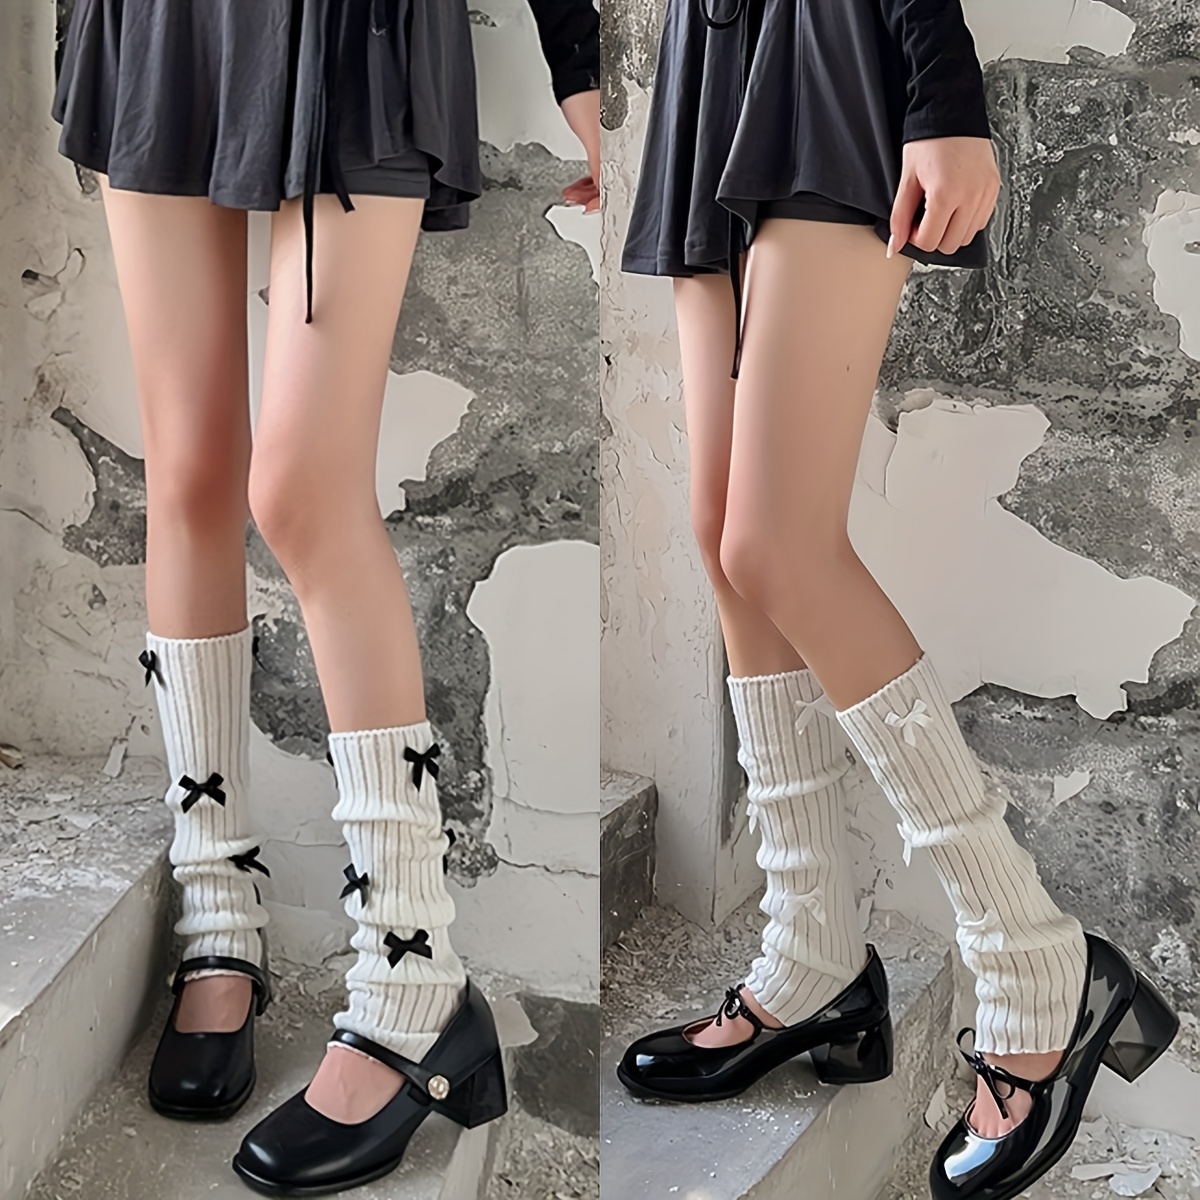 1 Pair Japanese Style Thigh High Stockings Long Socks Women Cute Sweet  Girls Lolita Bow Over Knee Socks Polka Dot Summer Nylon Stocking